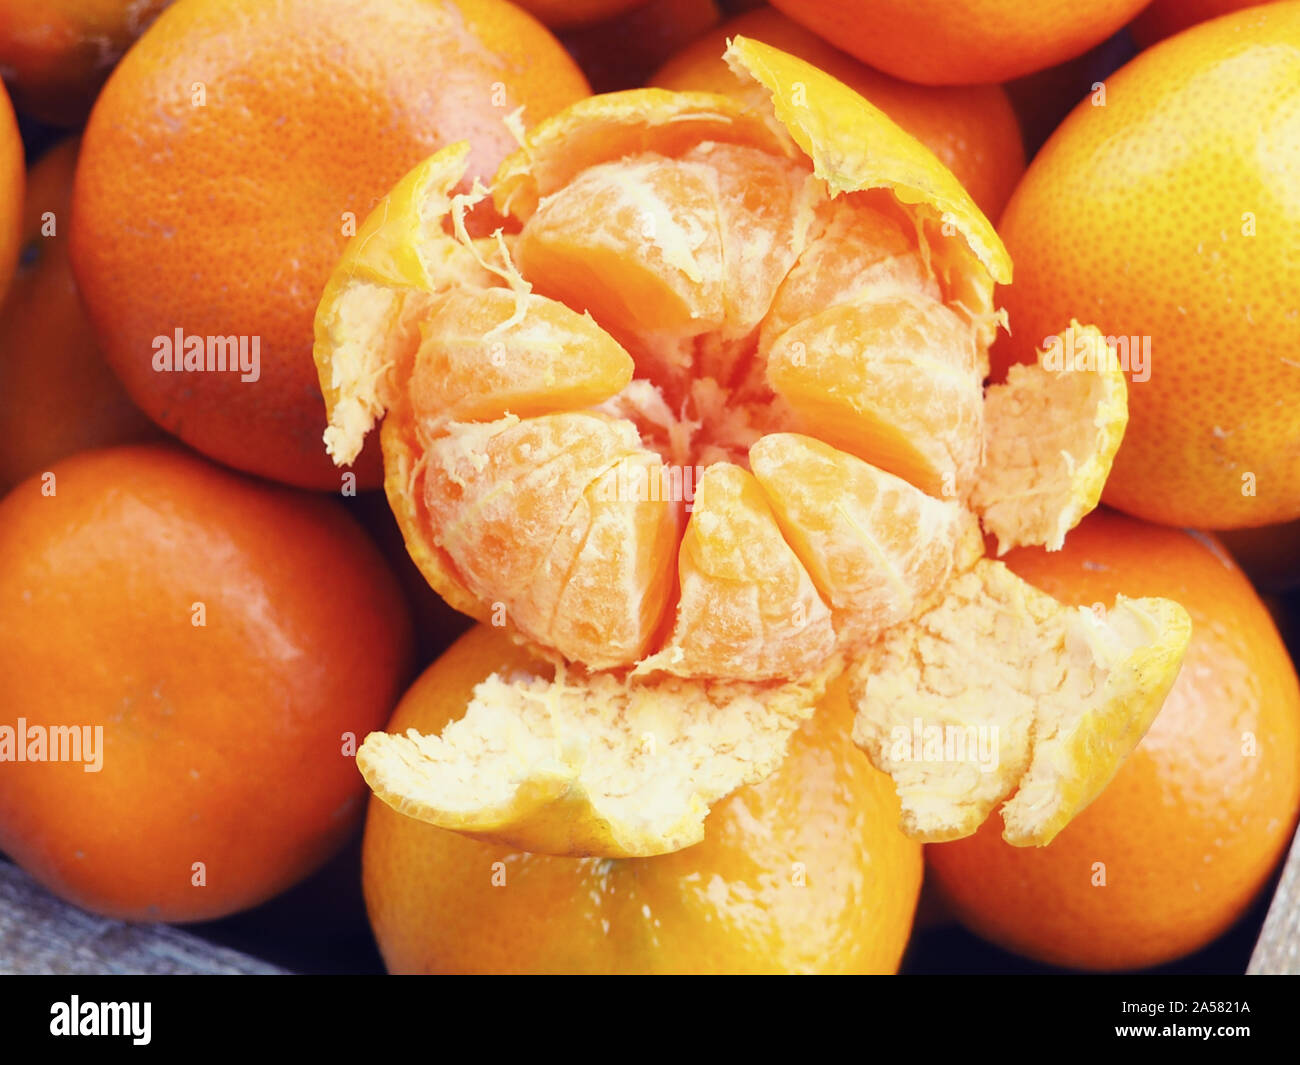 Holzkiste mit Mandarinen gefüllt. Eine Tangerine ist geschält. Neues Jahr Konzept. Stockfoto